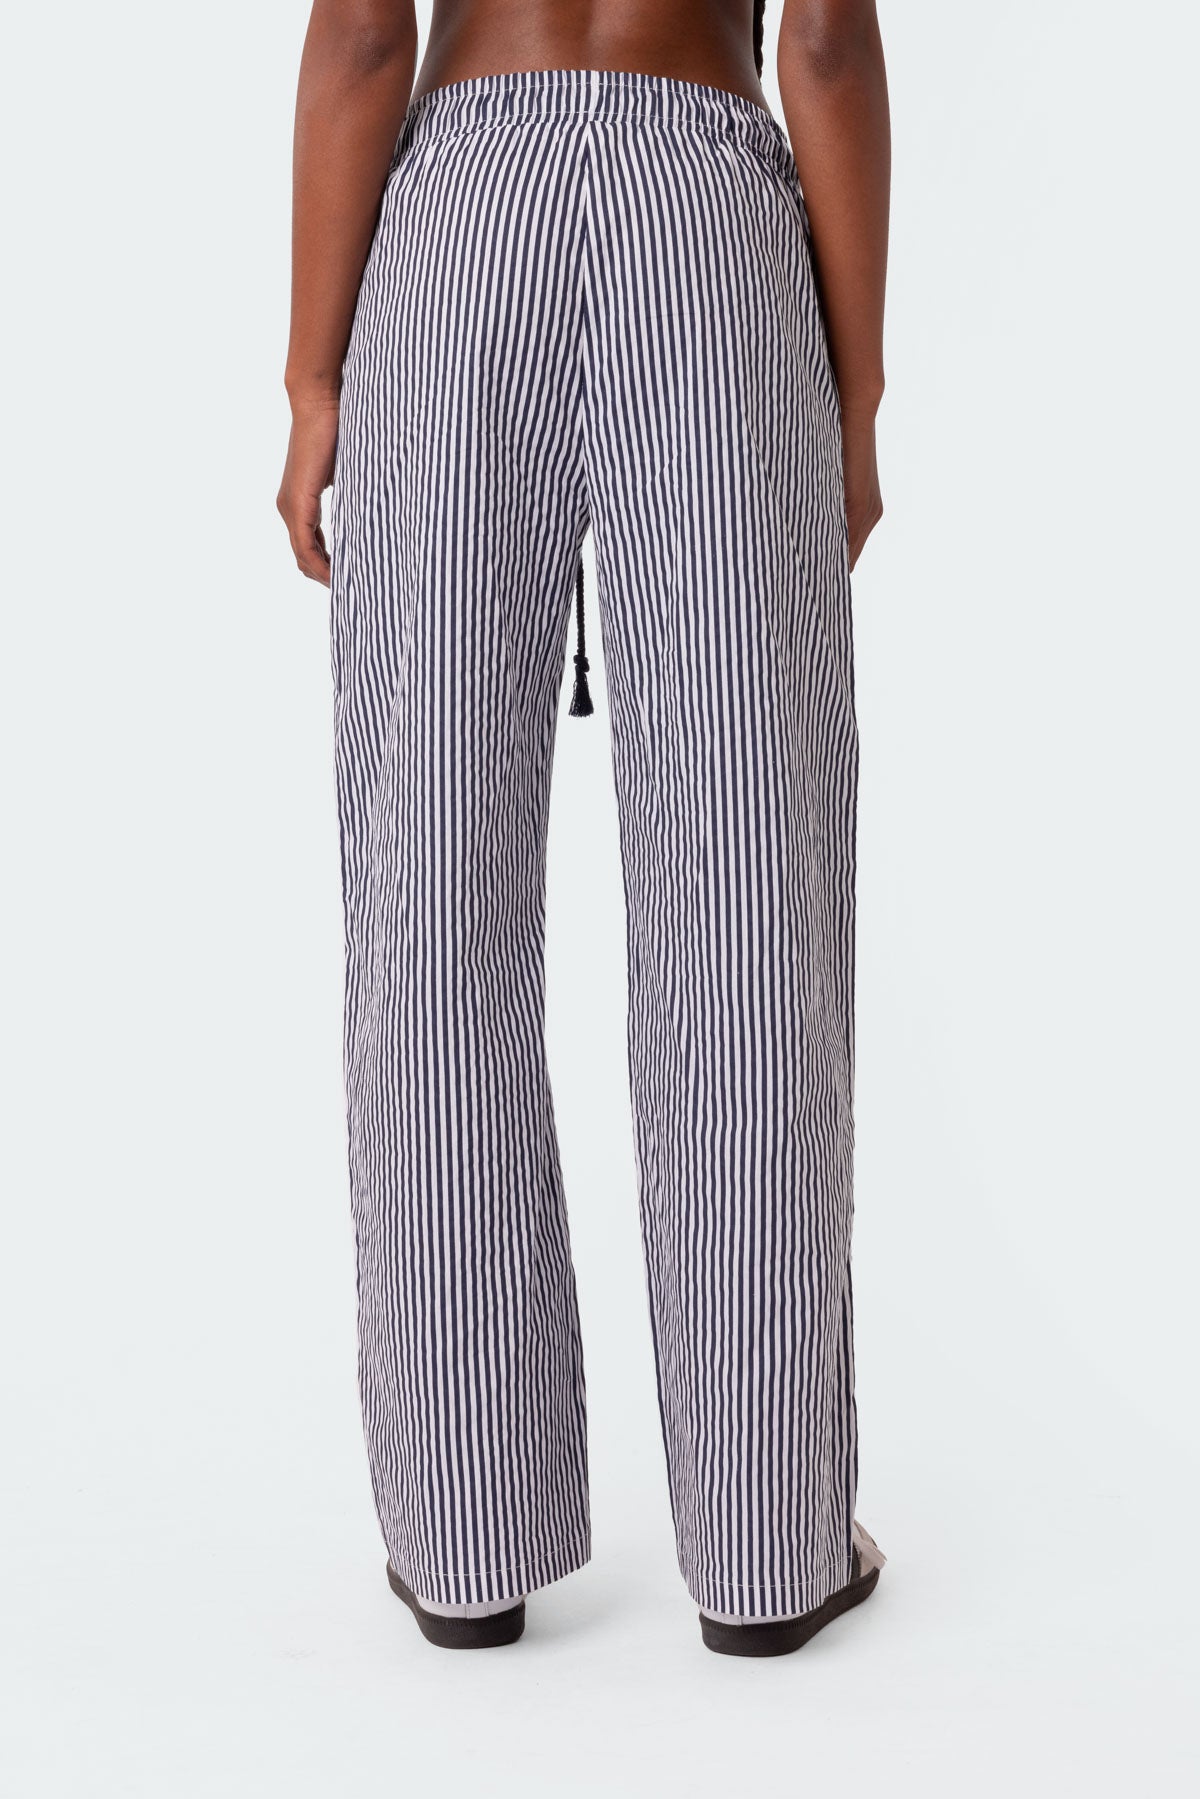 Seaside Striped Pants